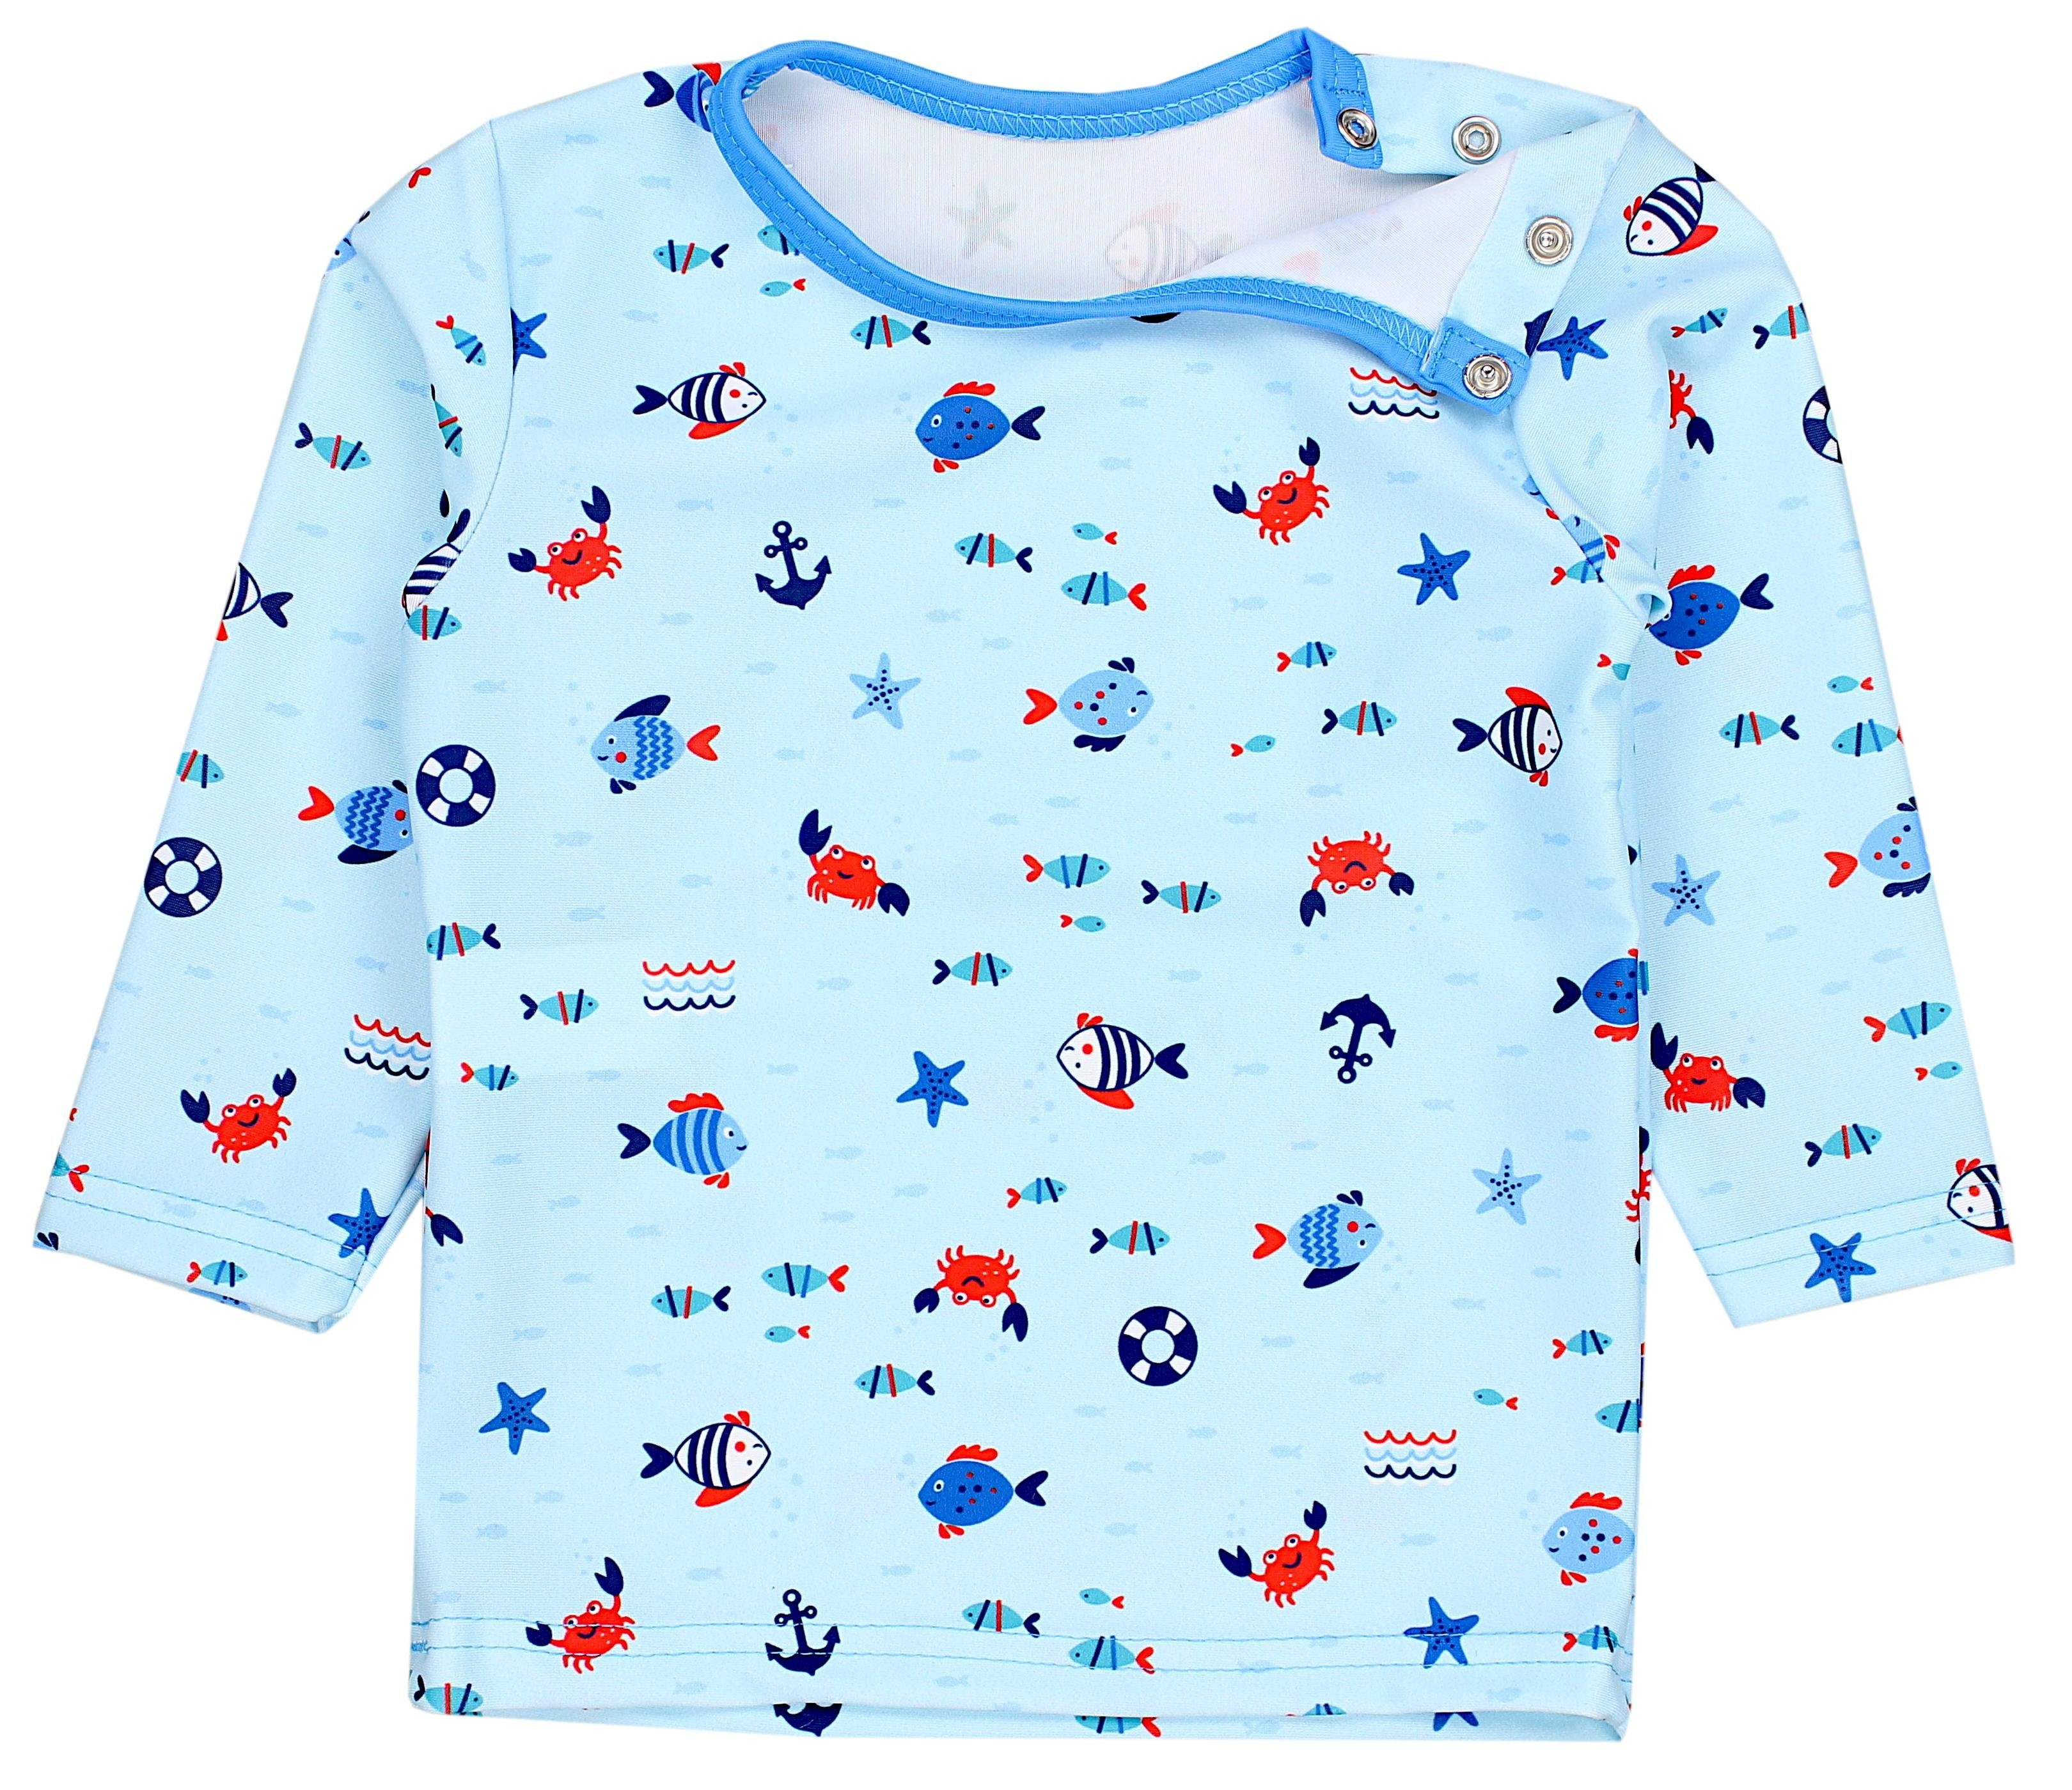 Kinder Fische Baby Aquarti Zweiteiliger Badeanzug Kleine Badeanzug Jungen / Badehose Langarm Hellblau / T-Shirt Blau UV-Schutz